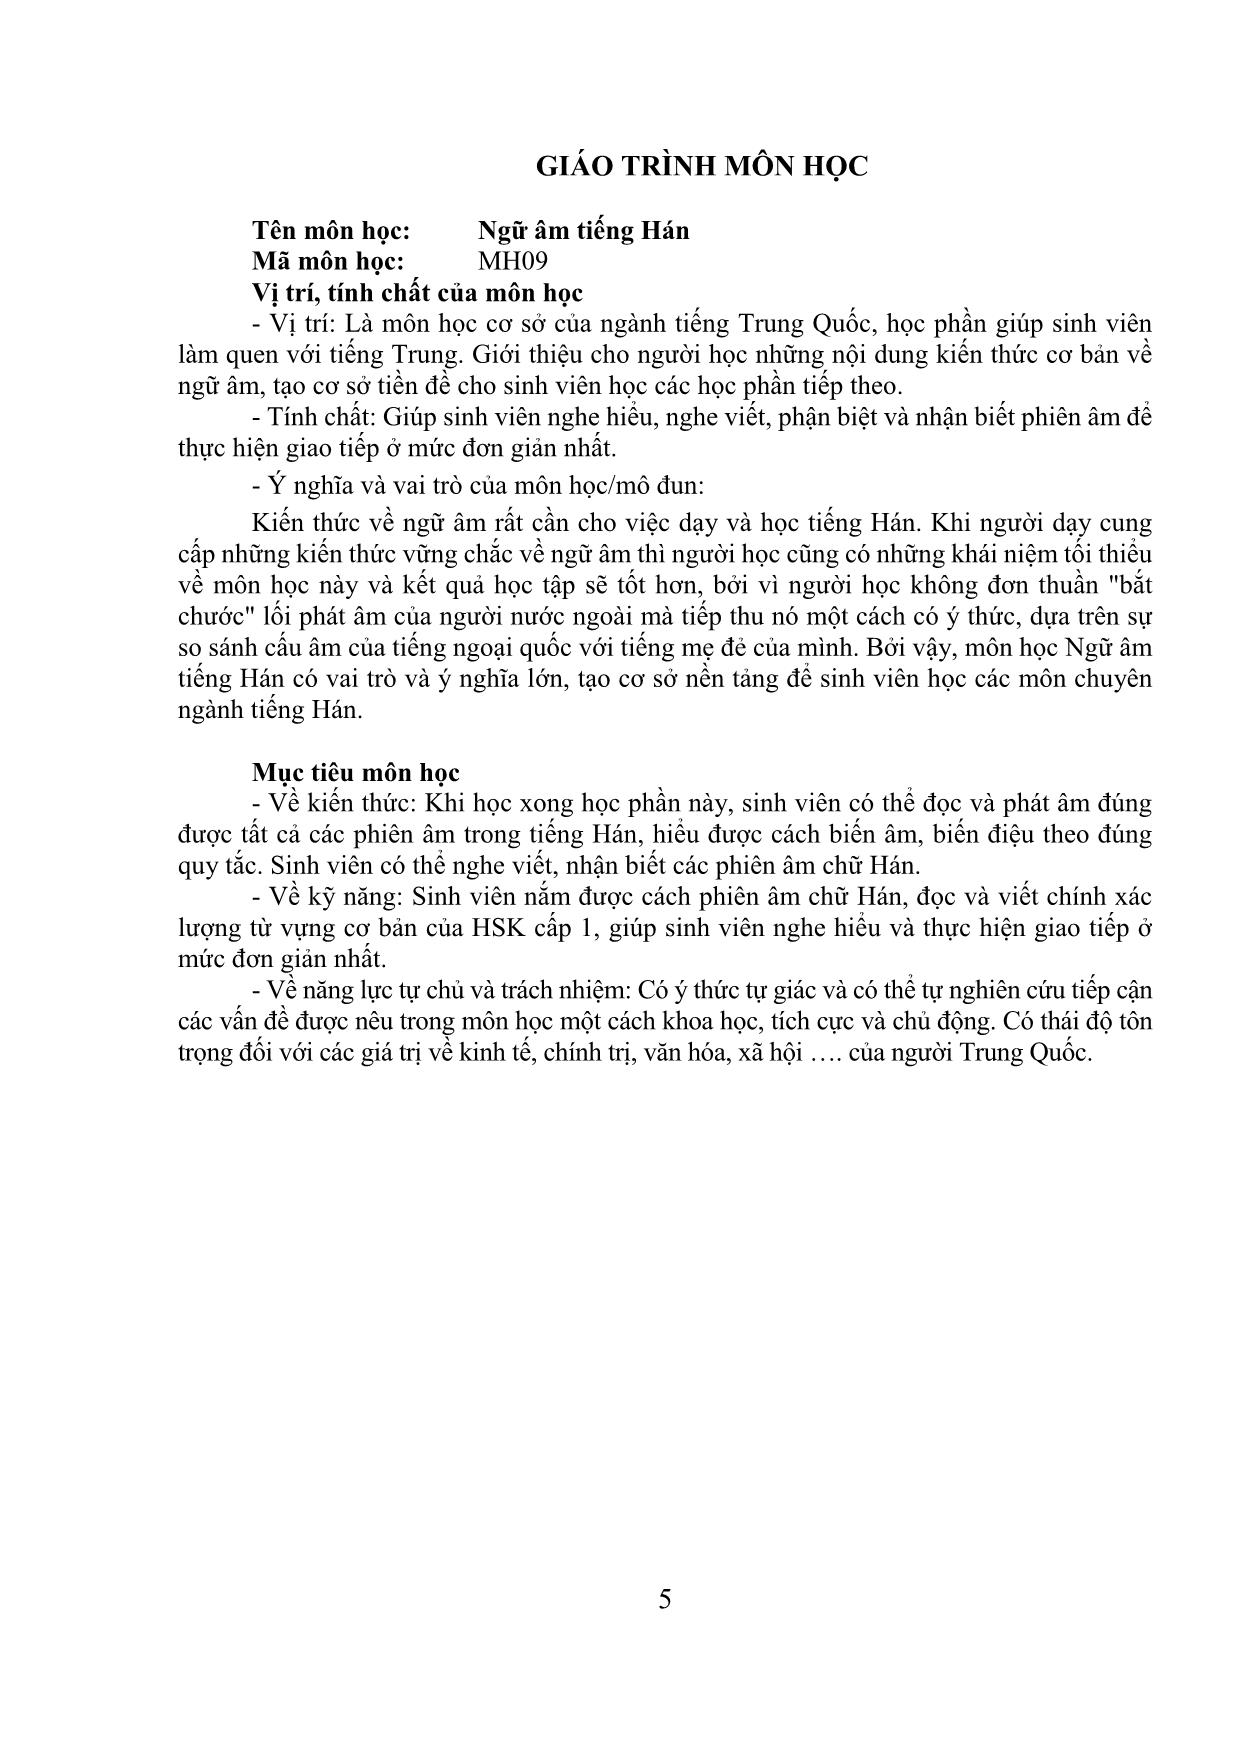 Giáo trình Ngữ âm tiếng Hán trang 5